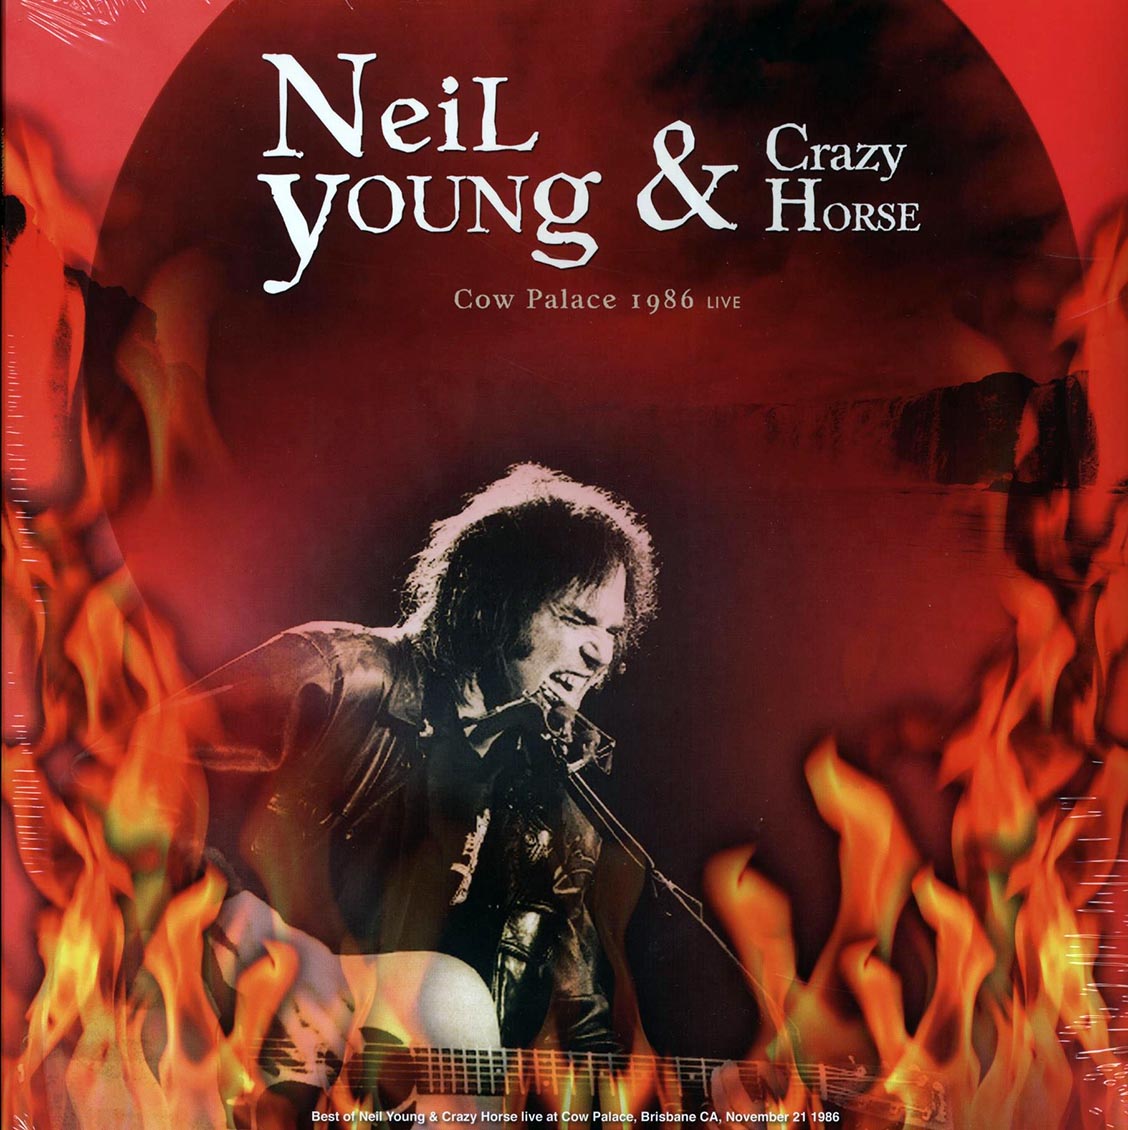 Neil Young & Crazy Horse - Cow Palace 1986 Live: Brisbane, CA, November 21st - Vinyl LP